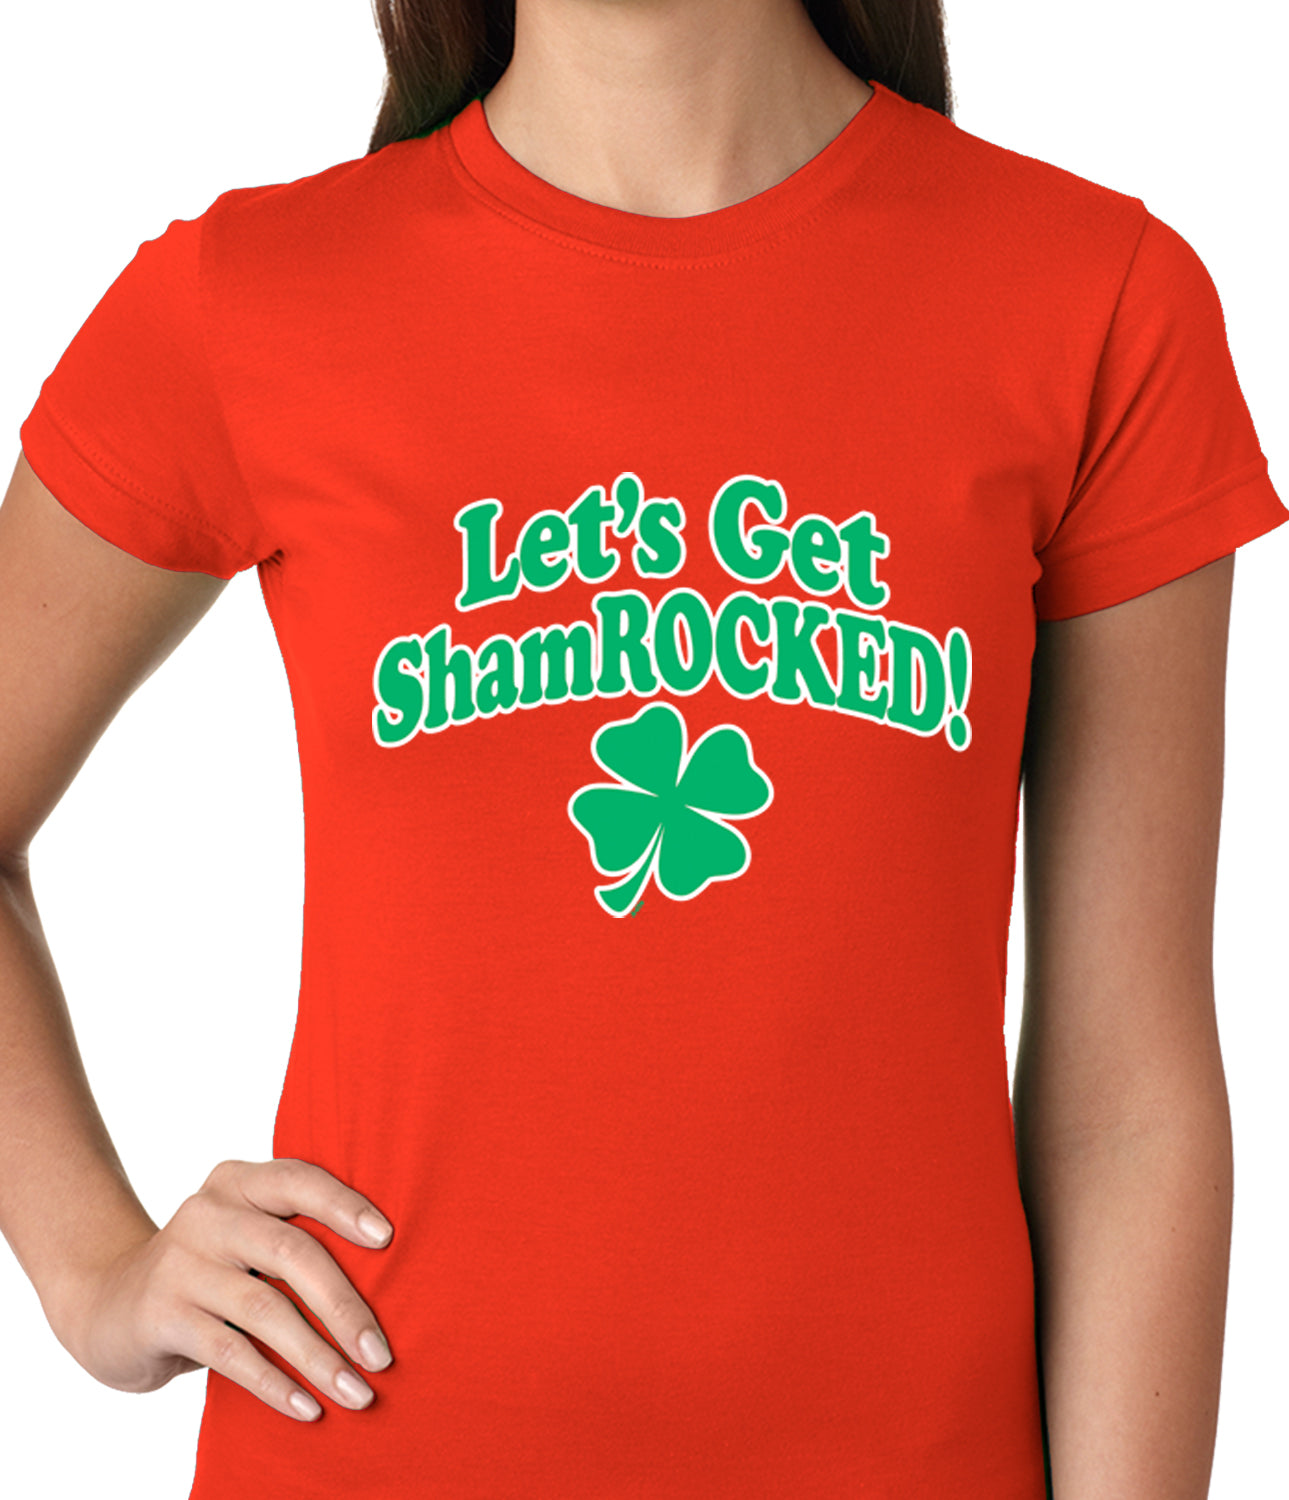 Let's Get ShamROCKED Funny Irish Ladies T-shirt Orange Red